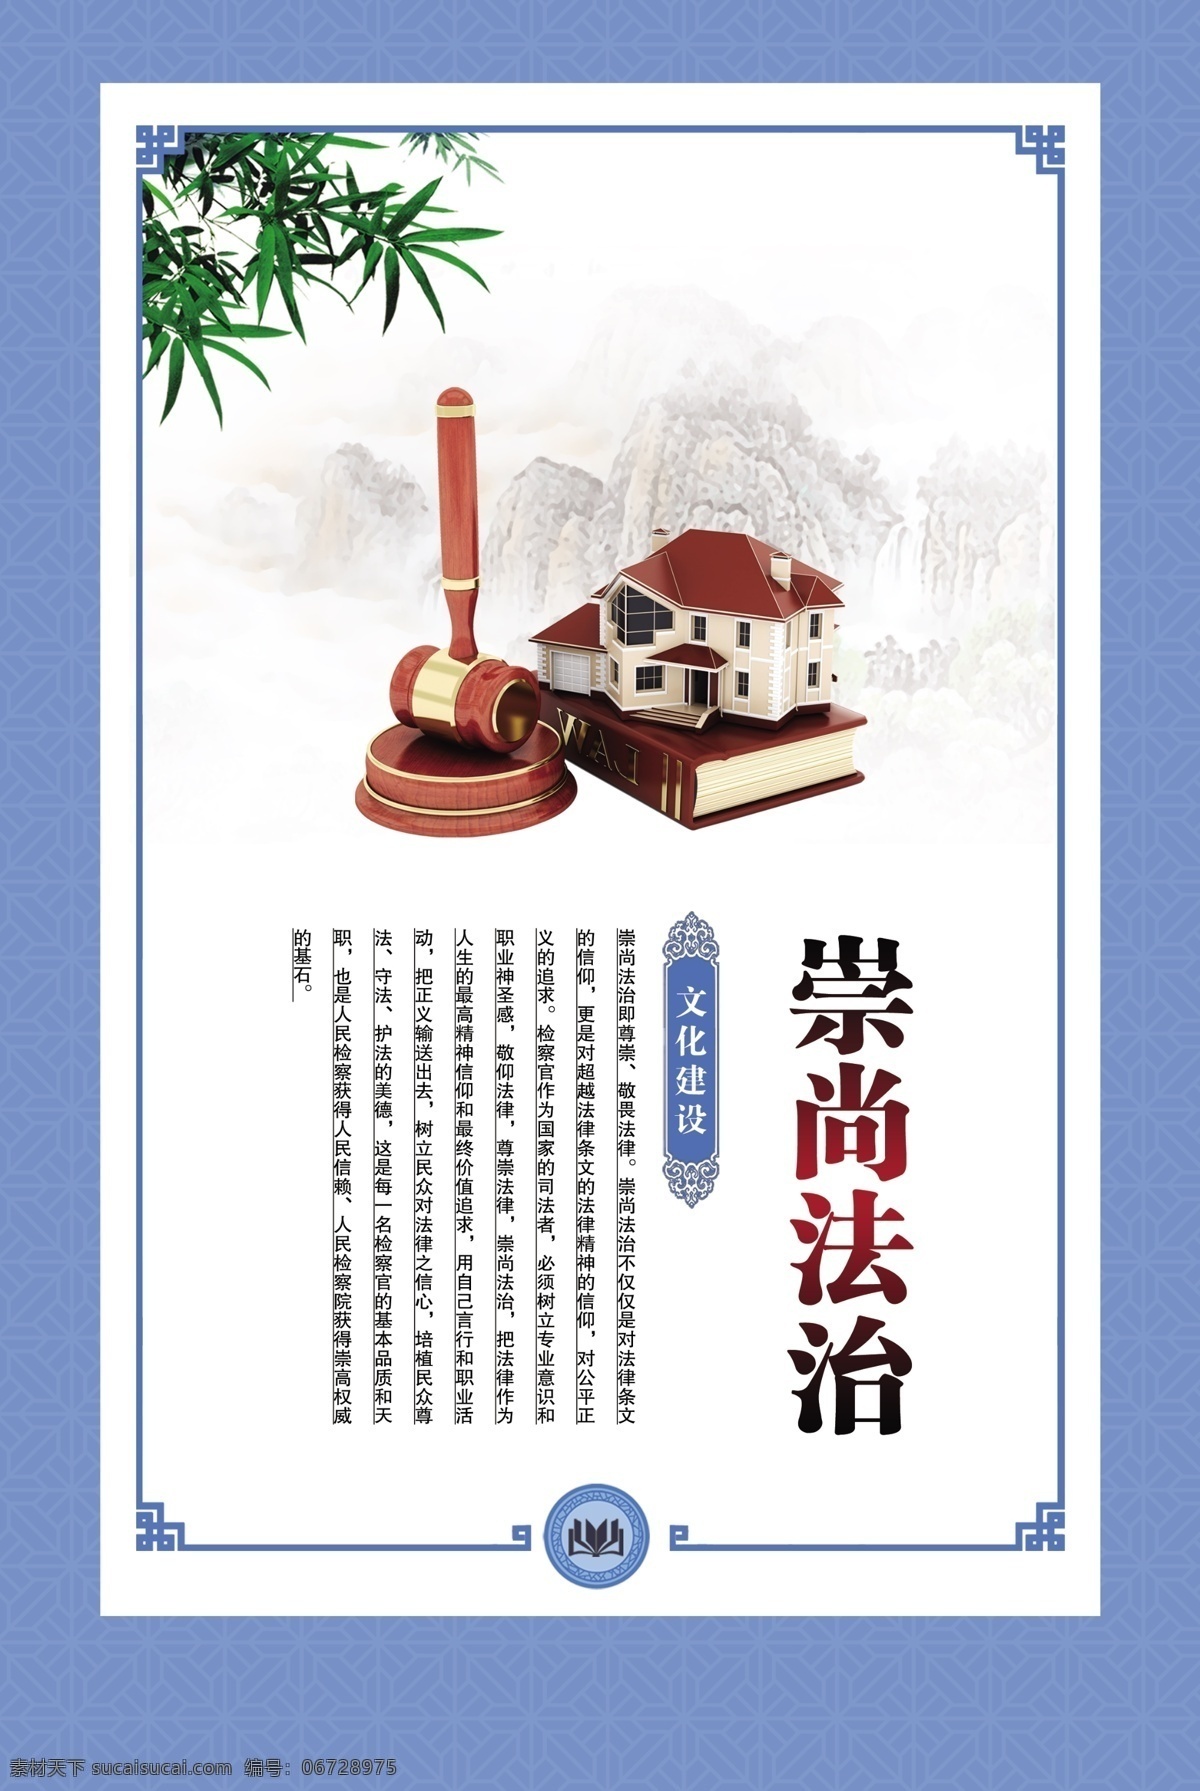 崇尚法治 法官锤 竹子 企业文化 法律 蓝色背景 中国风图版 房子 书本